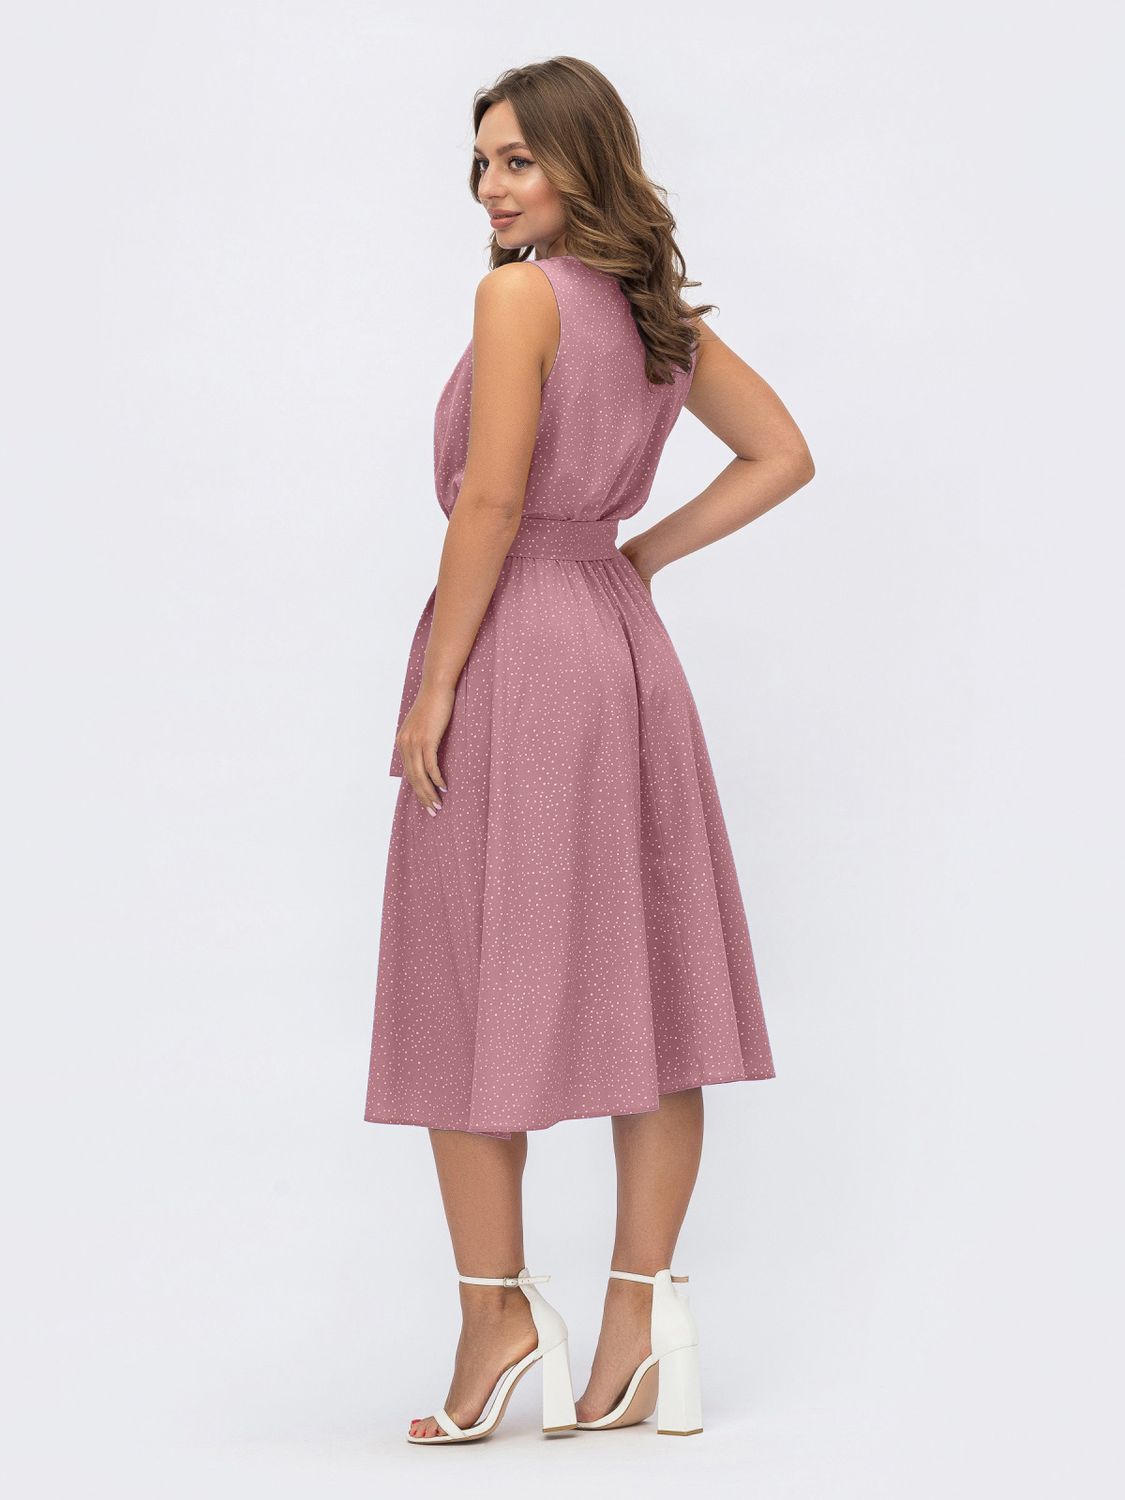 Летнее платье с юбкой-солнце розового цвета - фото